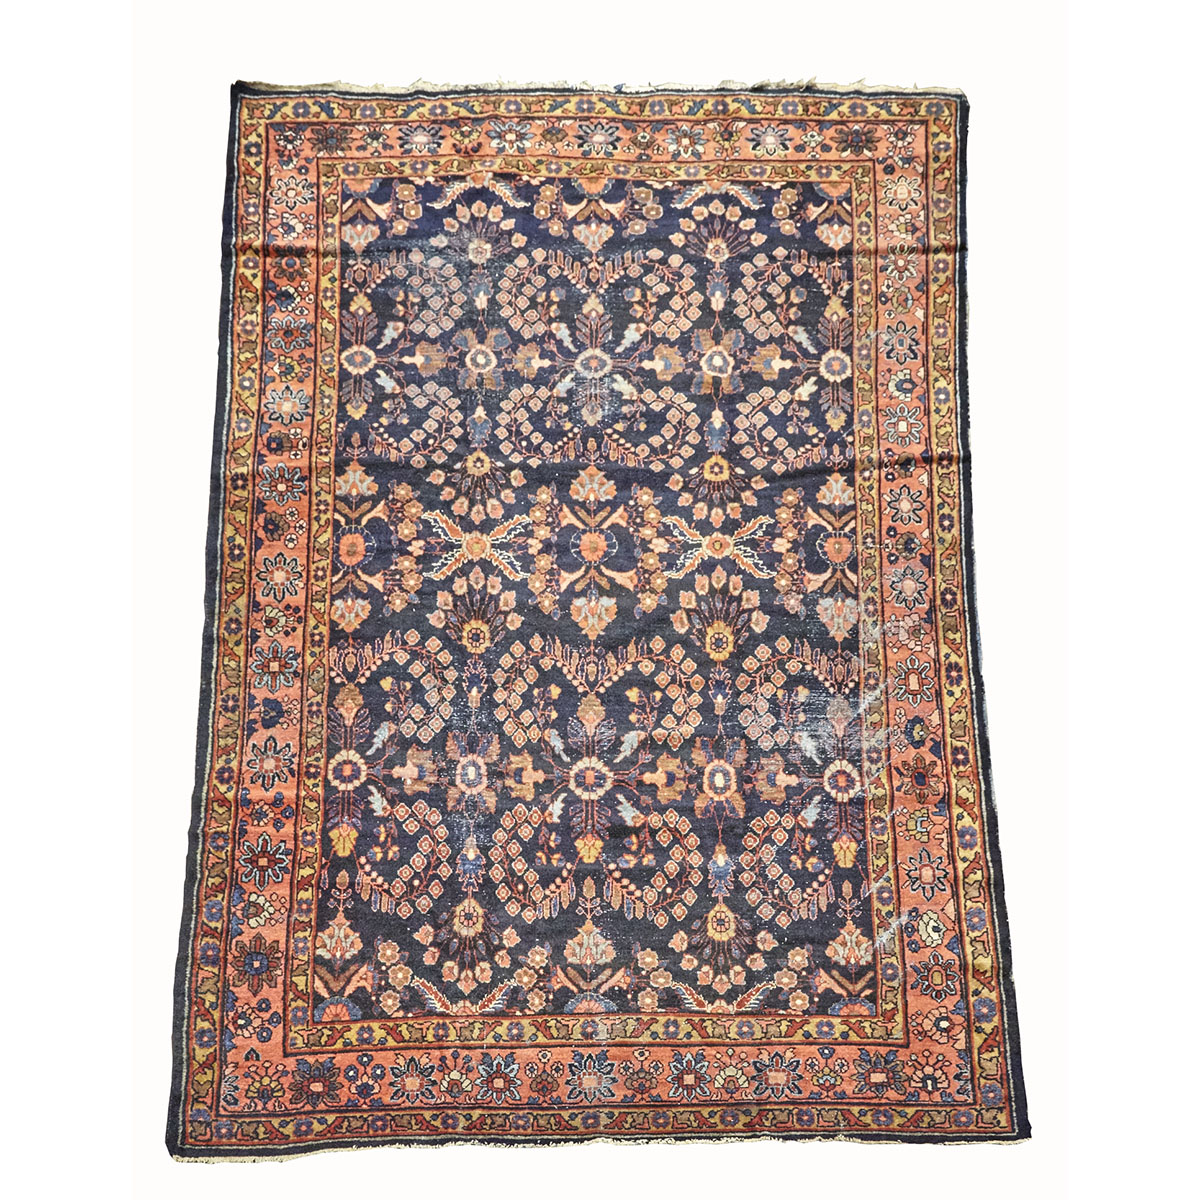 Mahal Carpet, c.1920, Persian